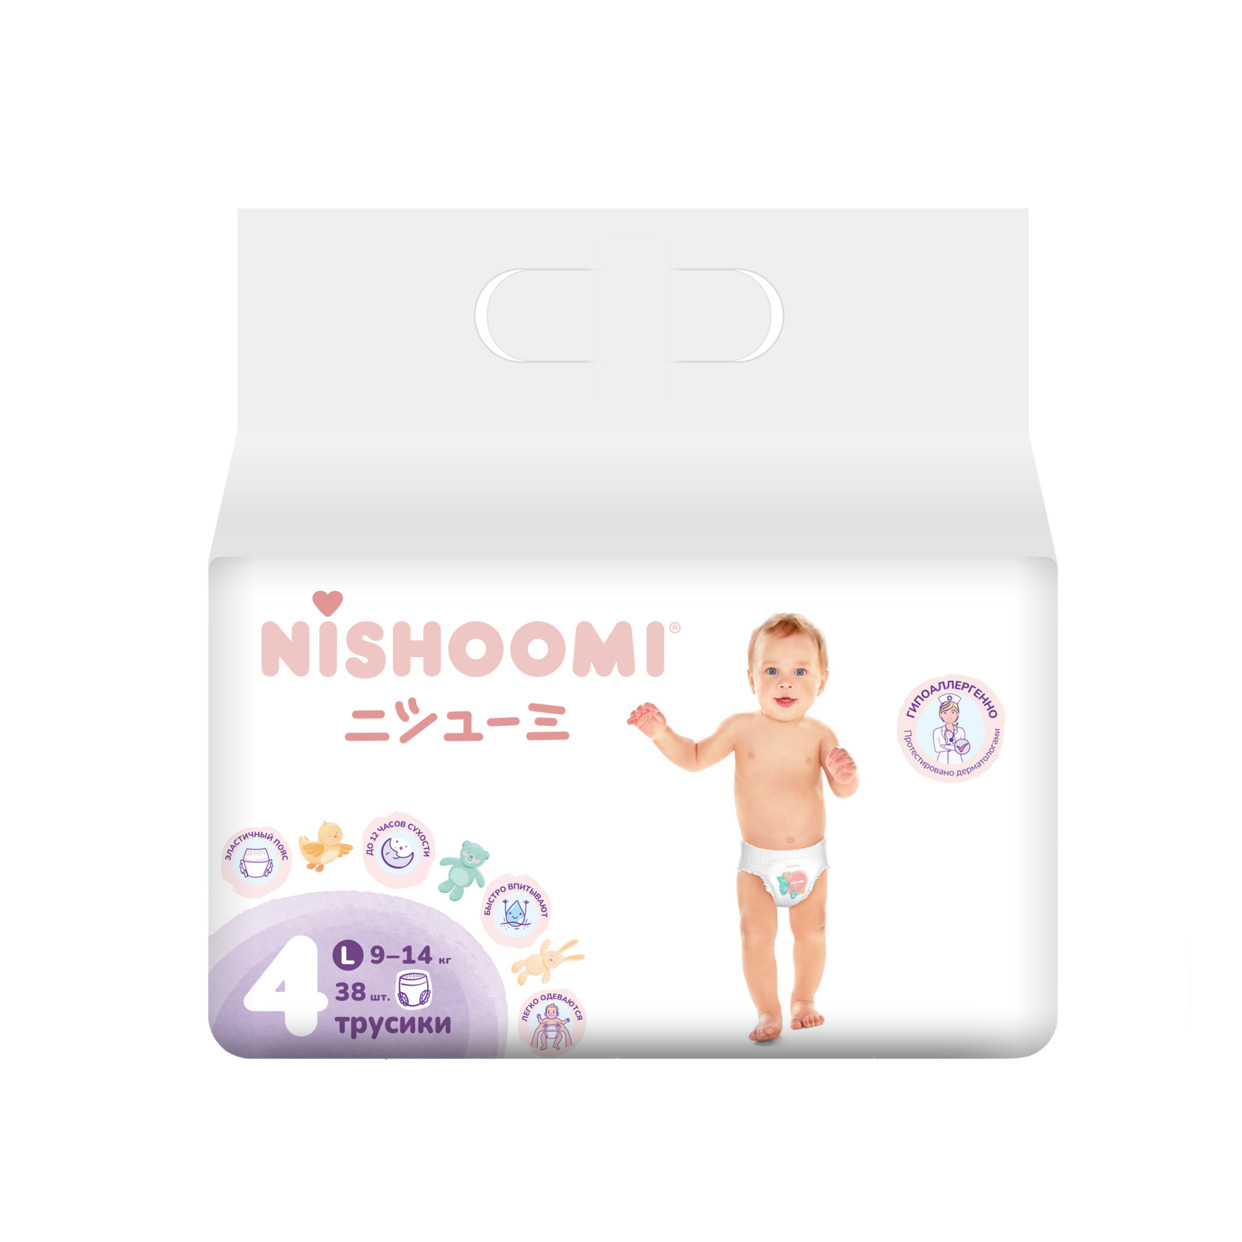 Изделия санитарно-гигиенические для ухода за детьми Nishoomi подгузники-трусики детские одноразовые. Размер «Макси» (L (4)), для дет ей весом 9-14 кг, 38 штук в уп. по акции в Пятерочке